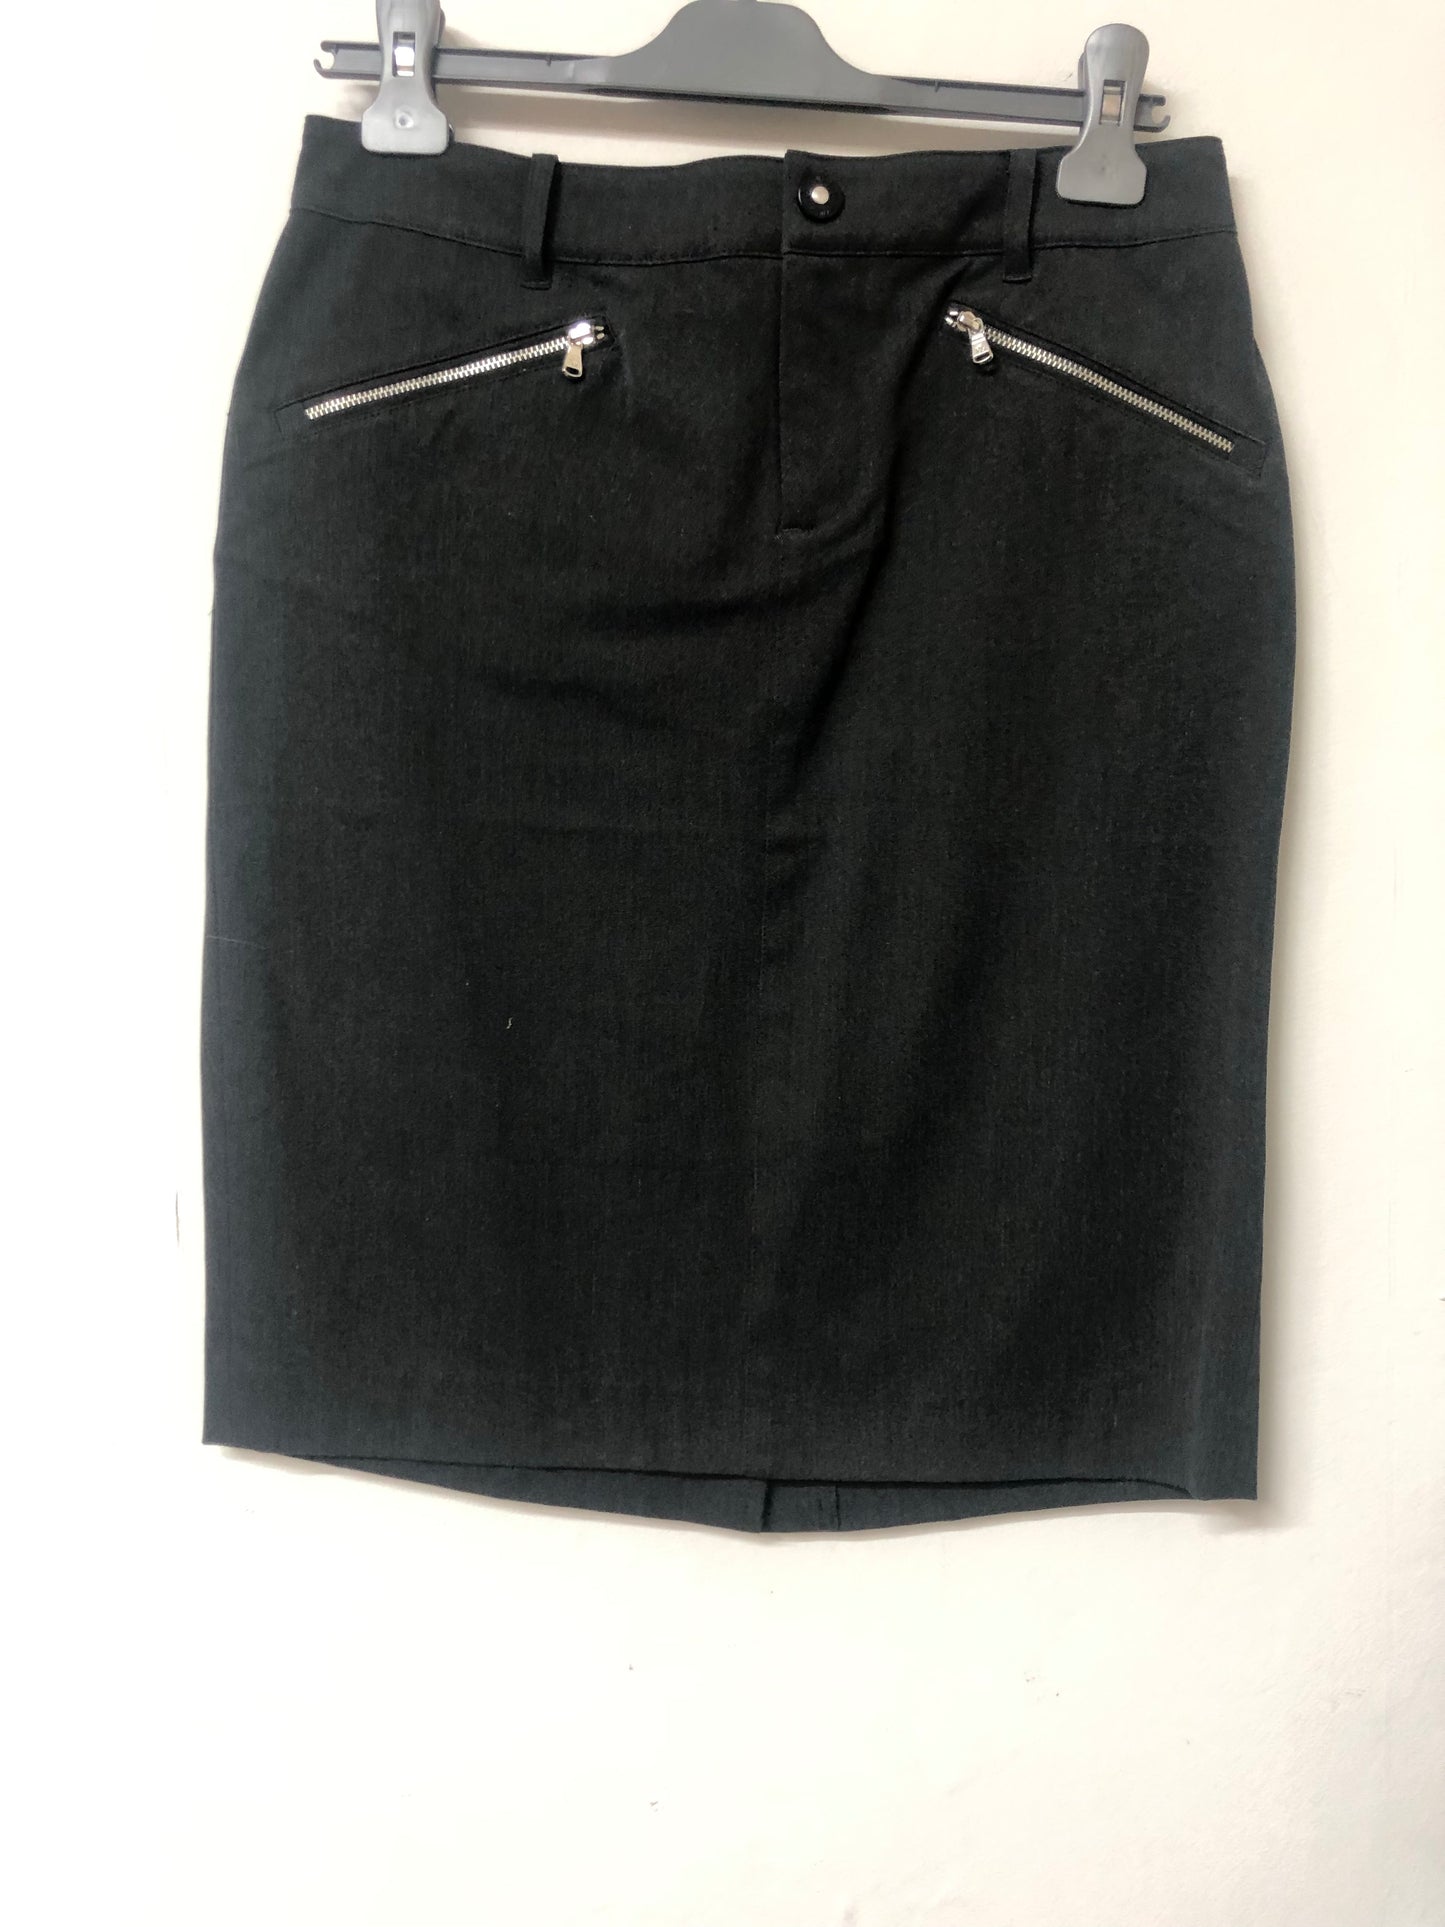 Grey Ralph Lauren Skirt with Zip detail Size 2